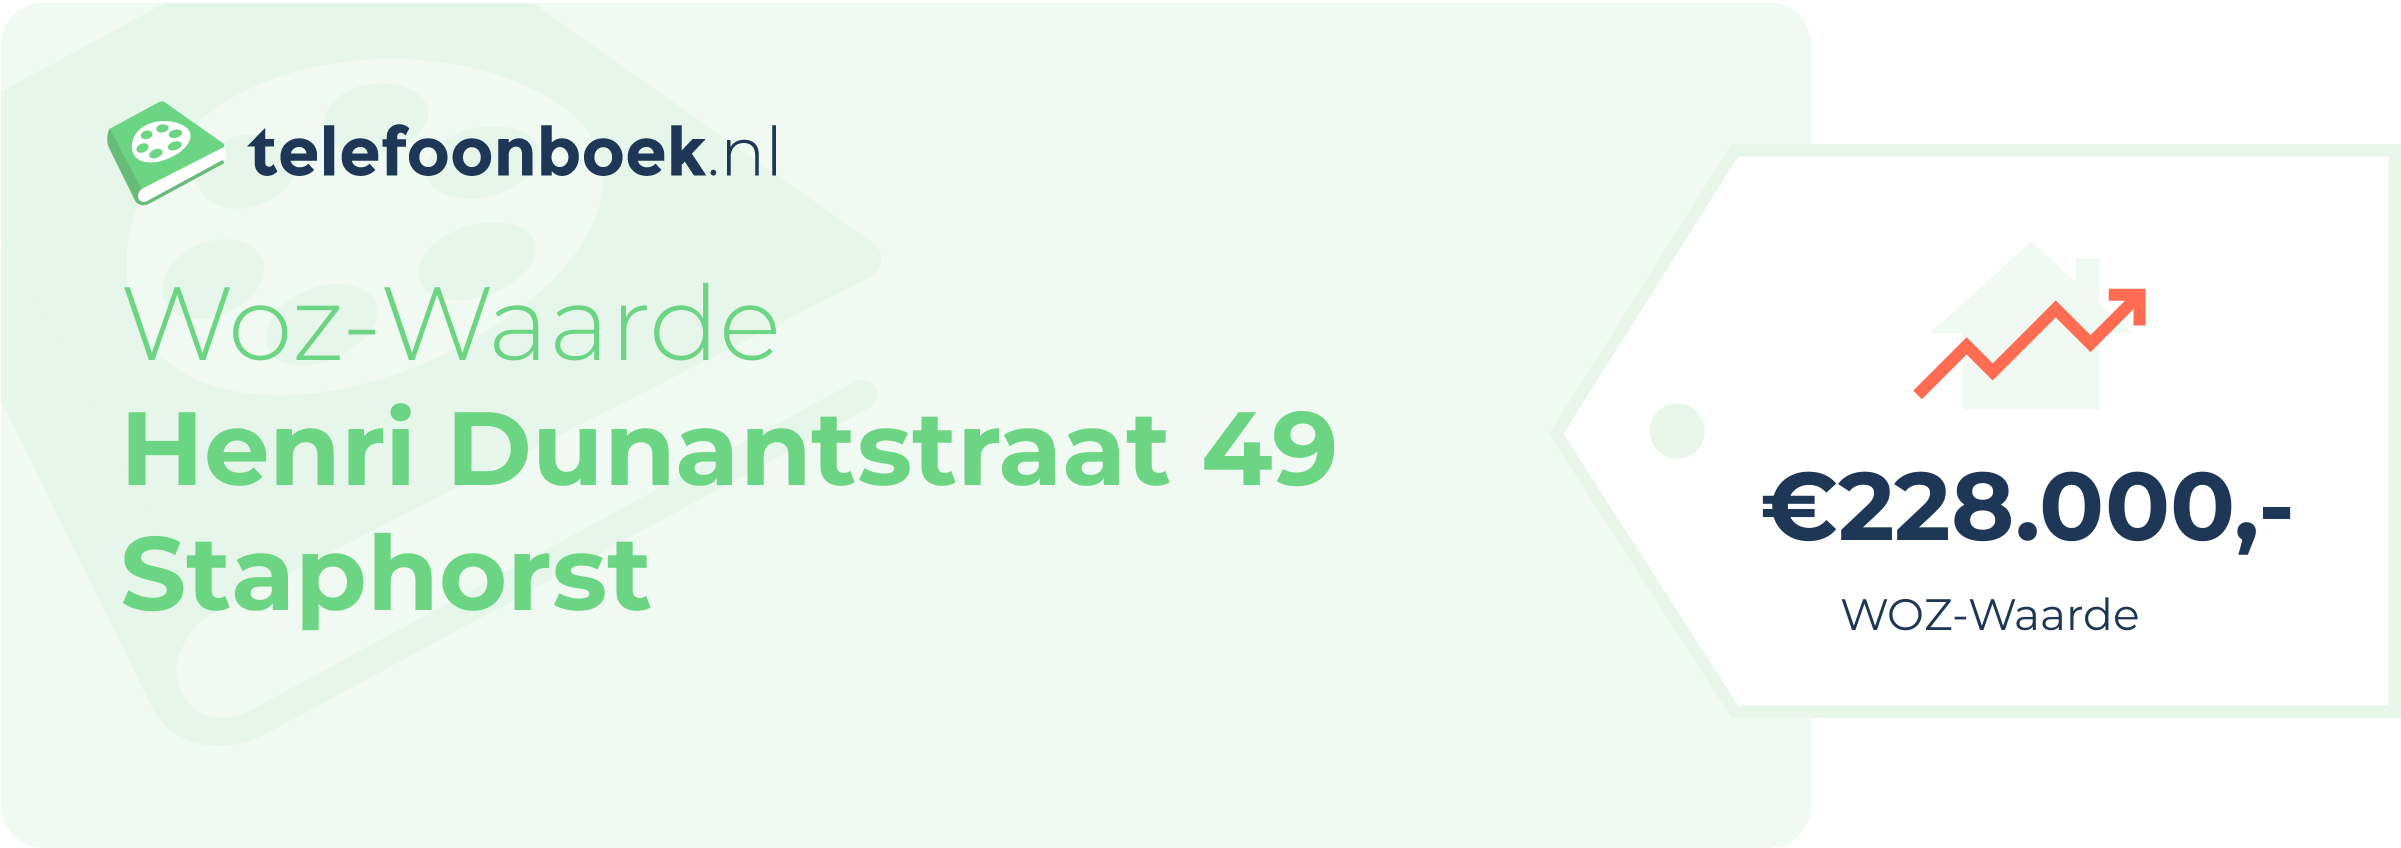 WOZ-waarde Henri Dunantstraat 49 Staphorst